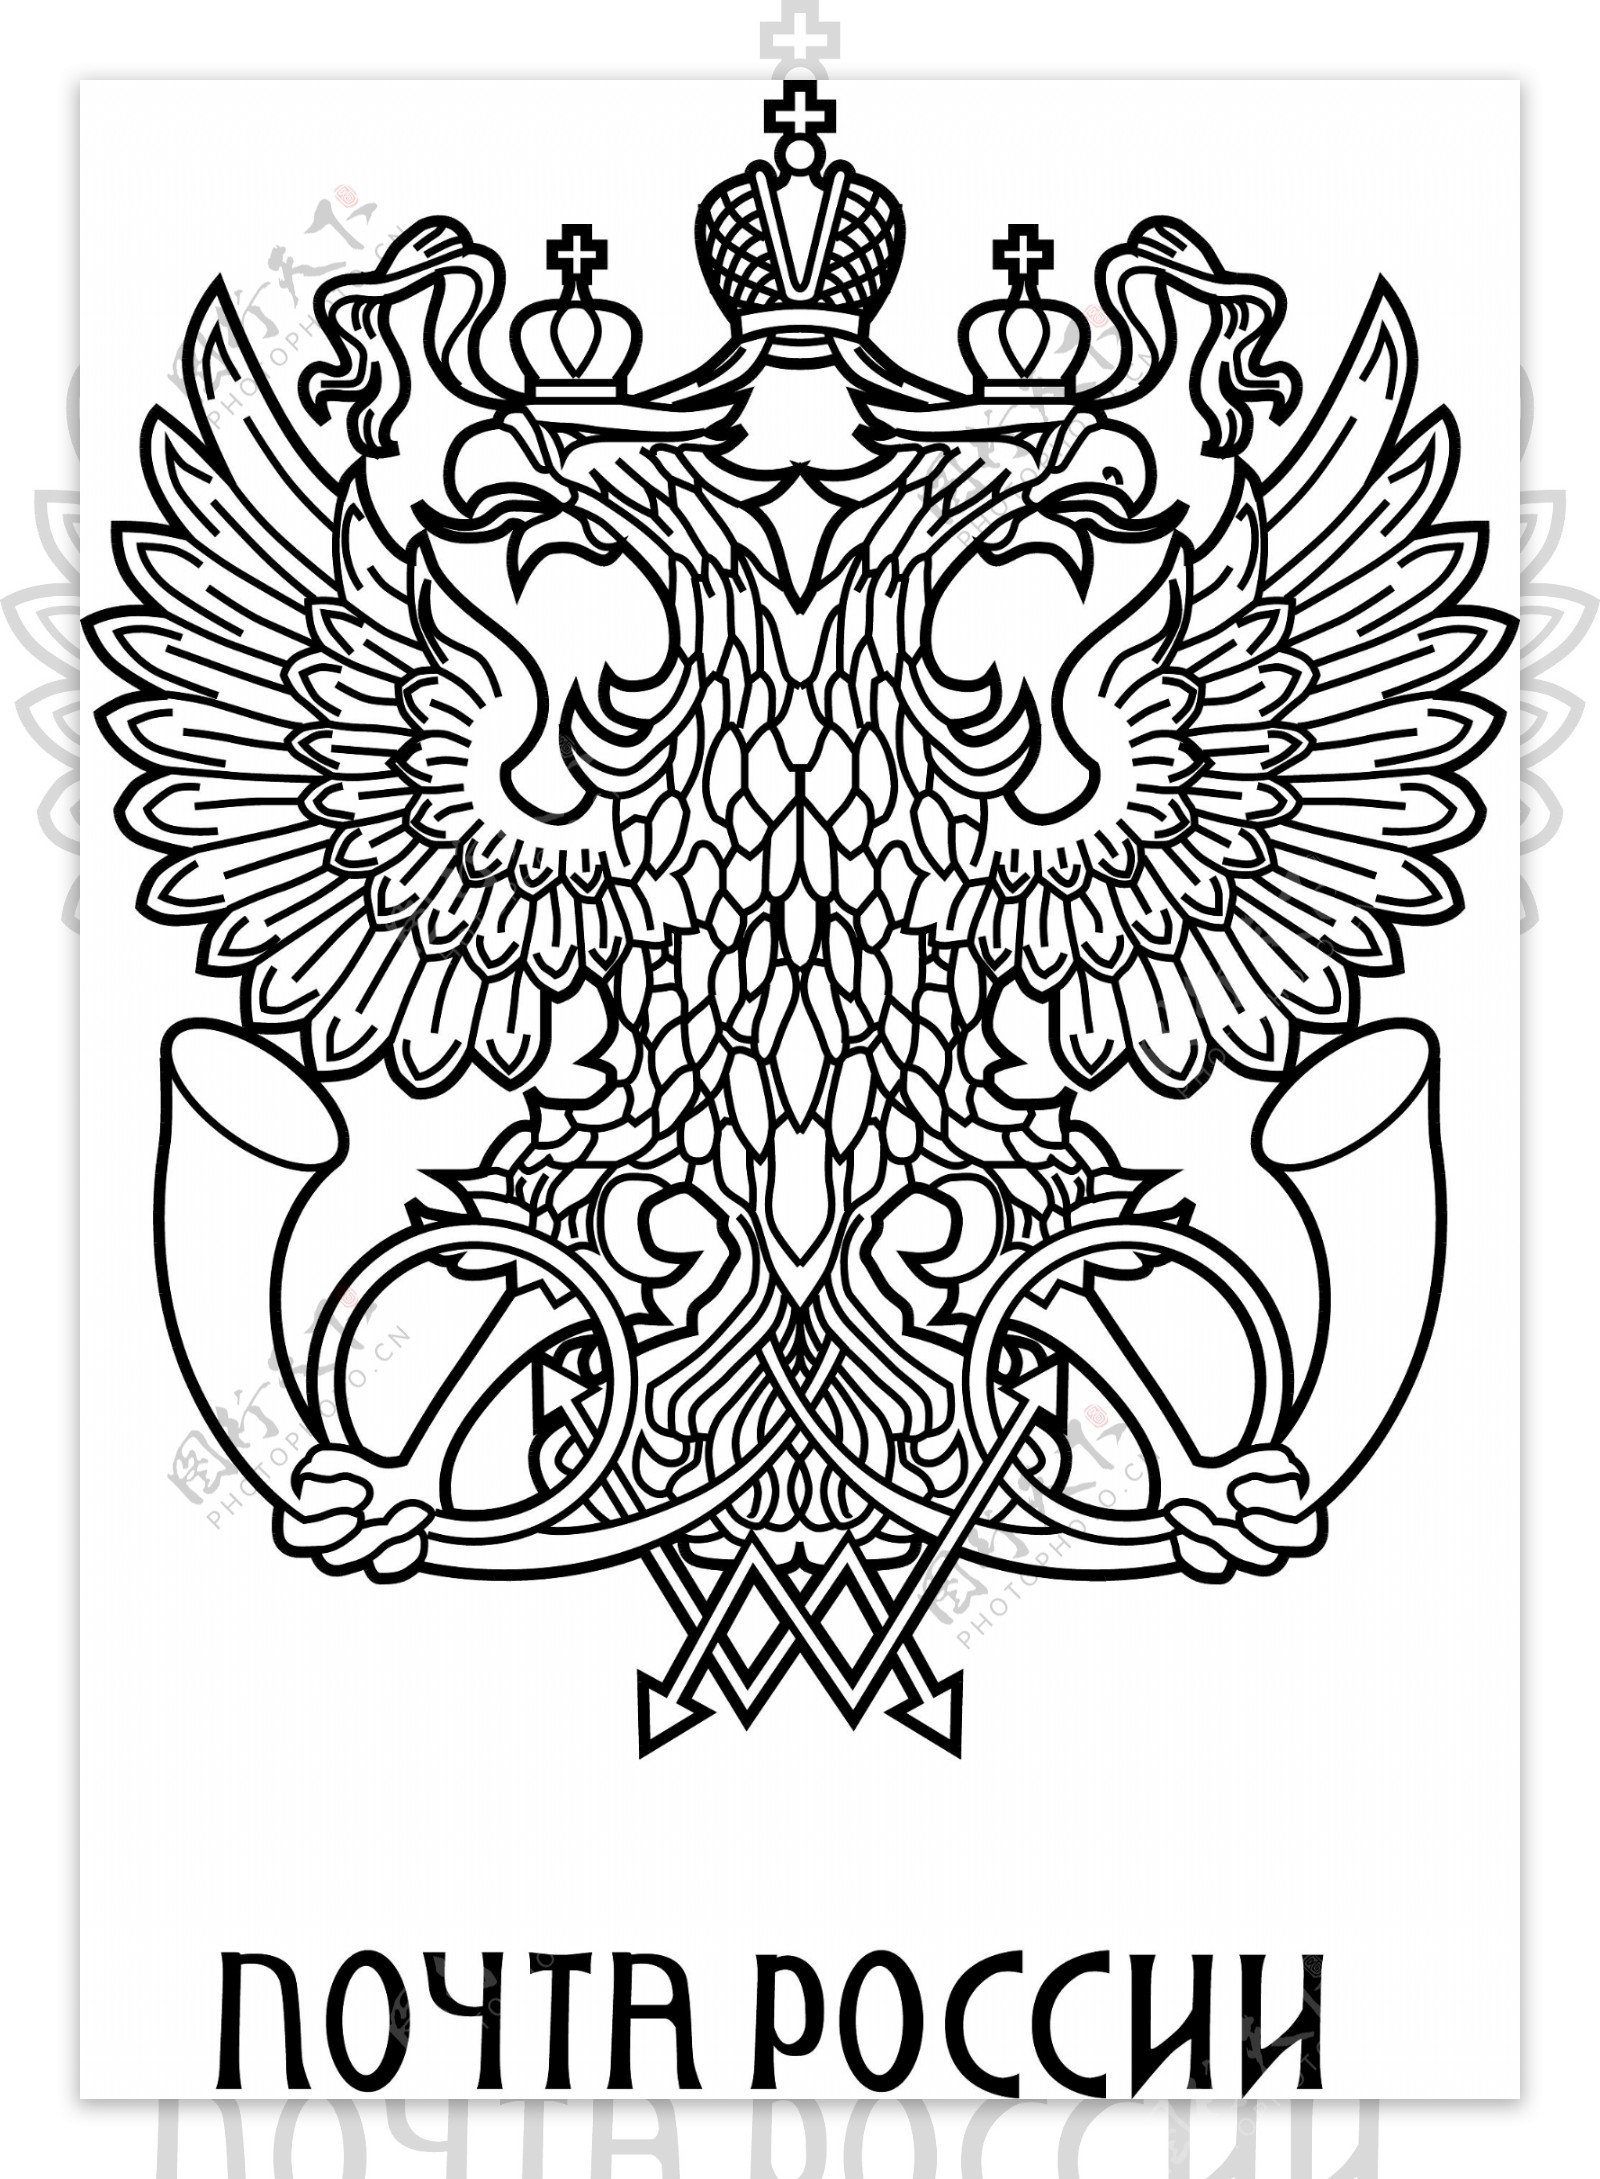 俄罗斯邮政标志